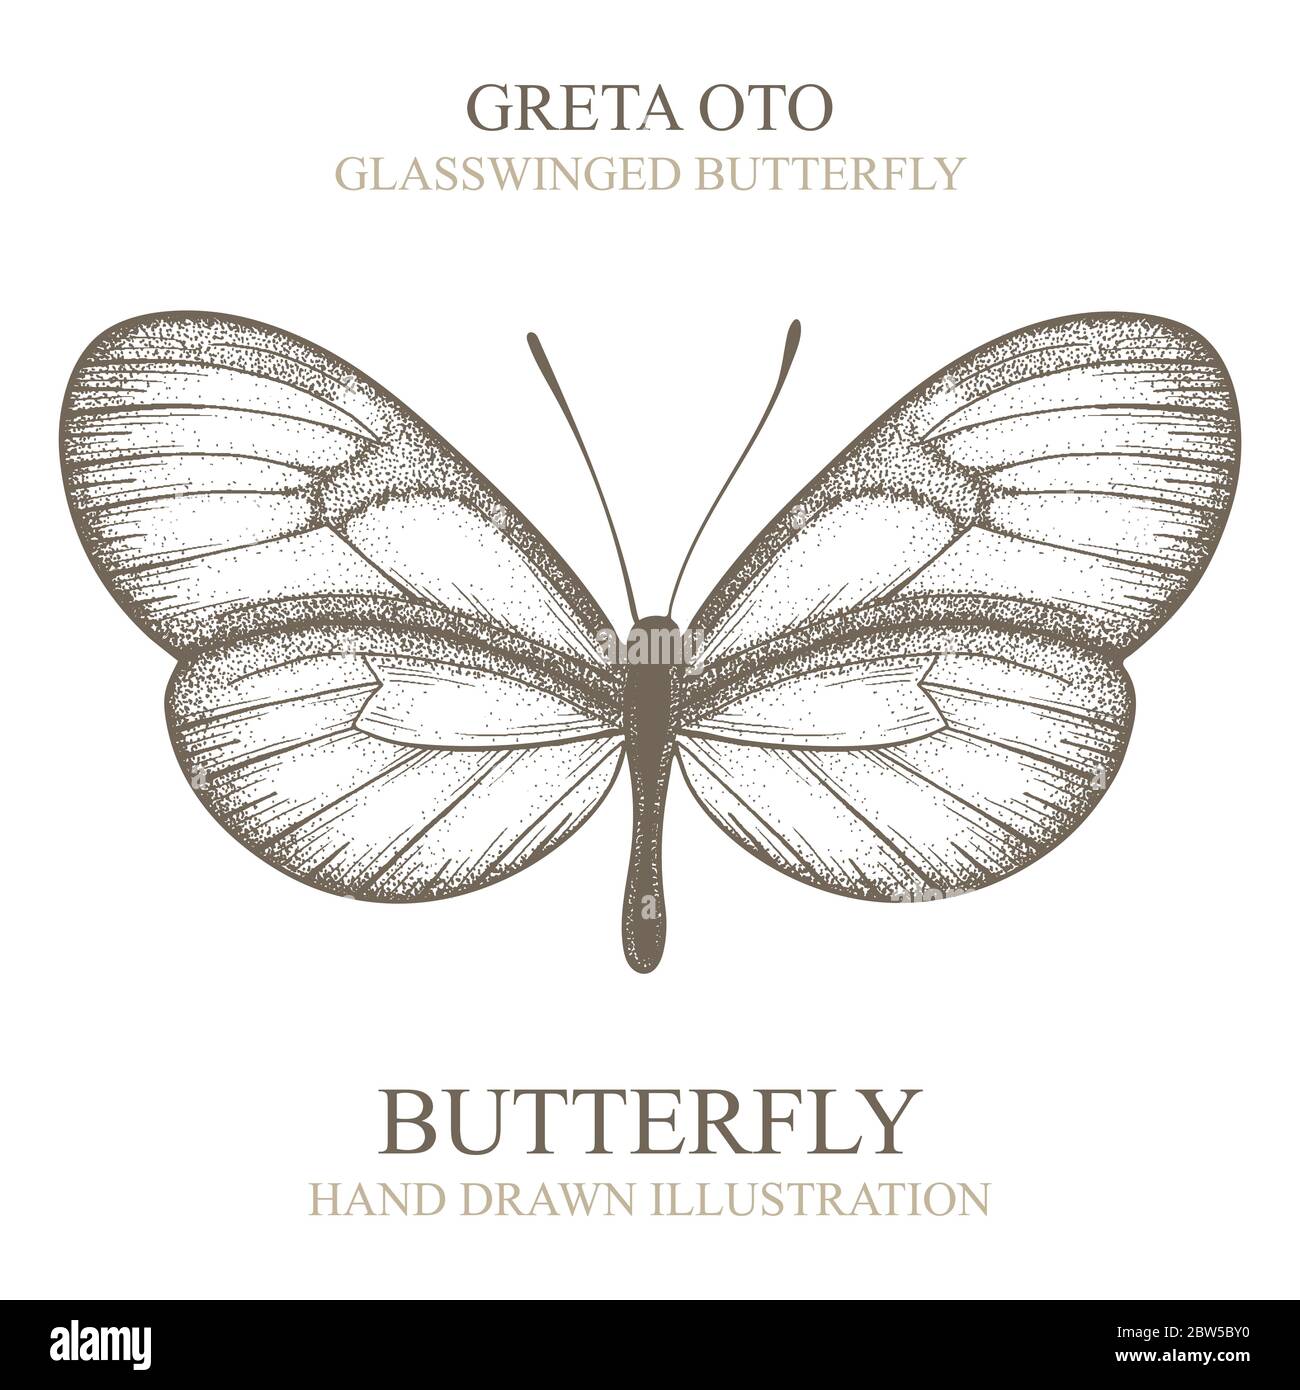 Schmetterling. Greta Oto geflügelter Schmetterling aus Glas. Schmetterling Hand gezeichnet Vektor Illustration. Teil des Sets. Stock Vektor